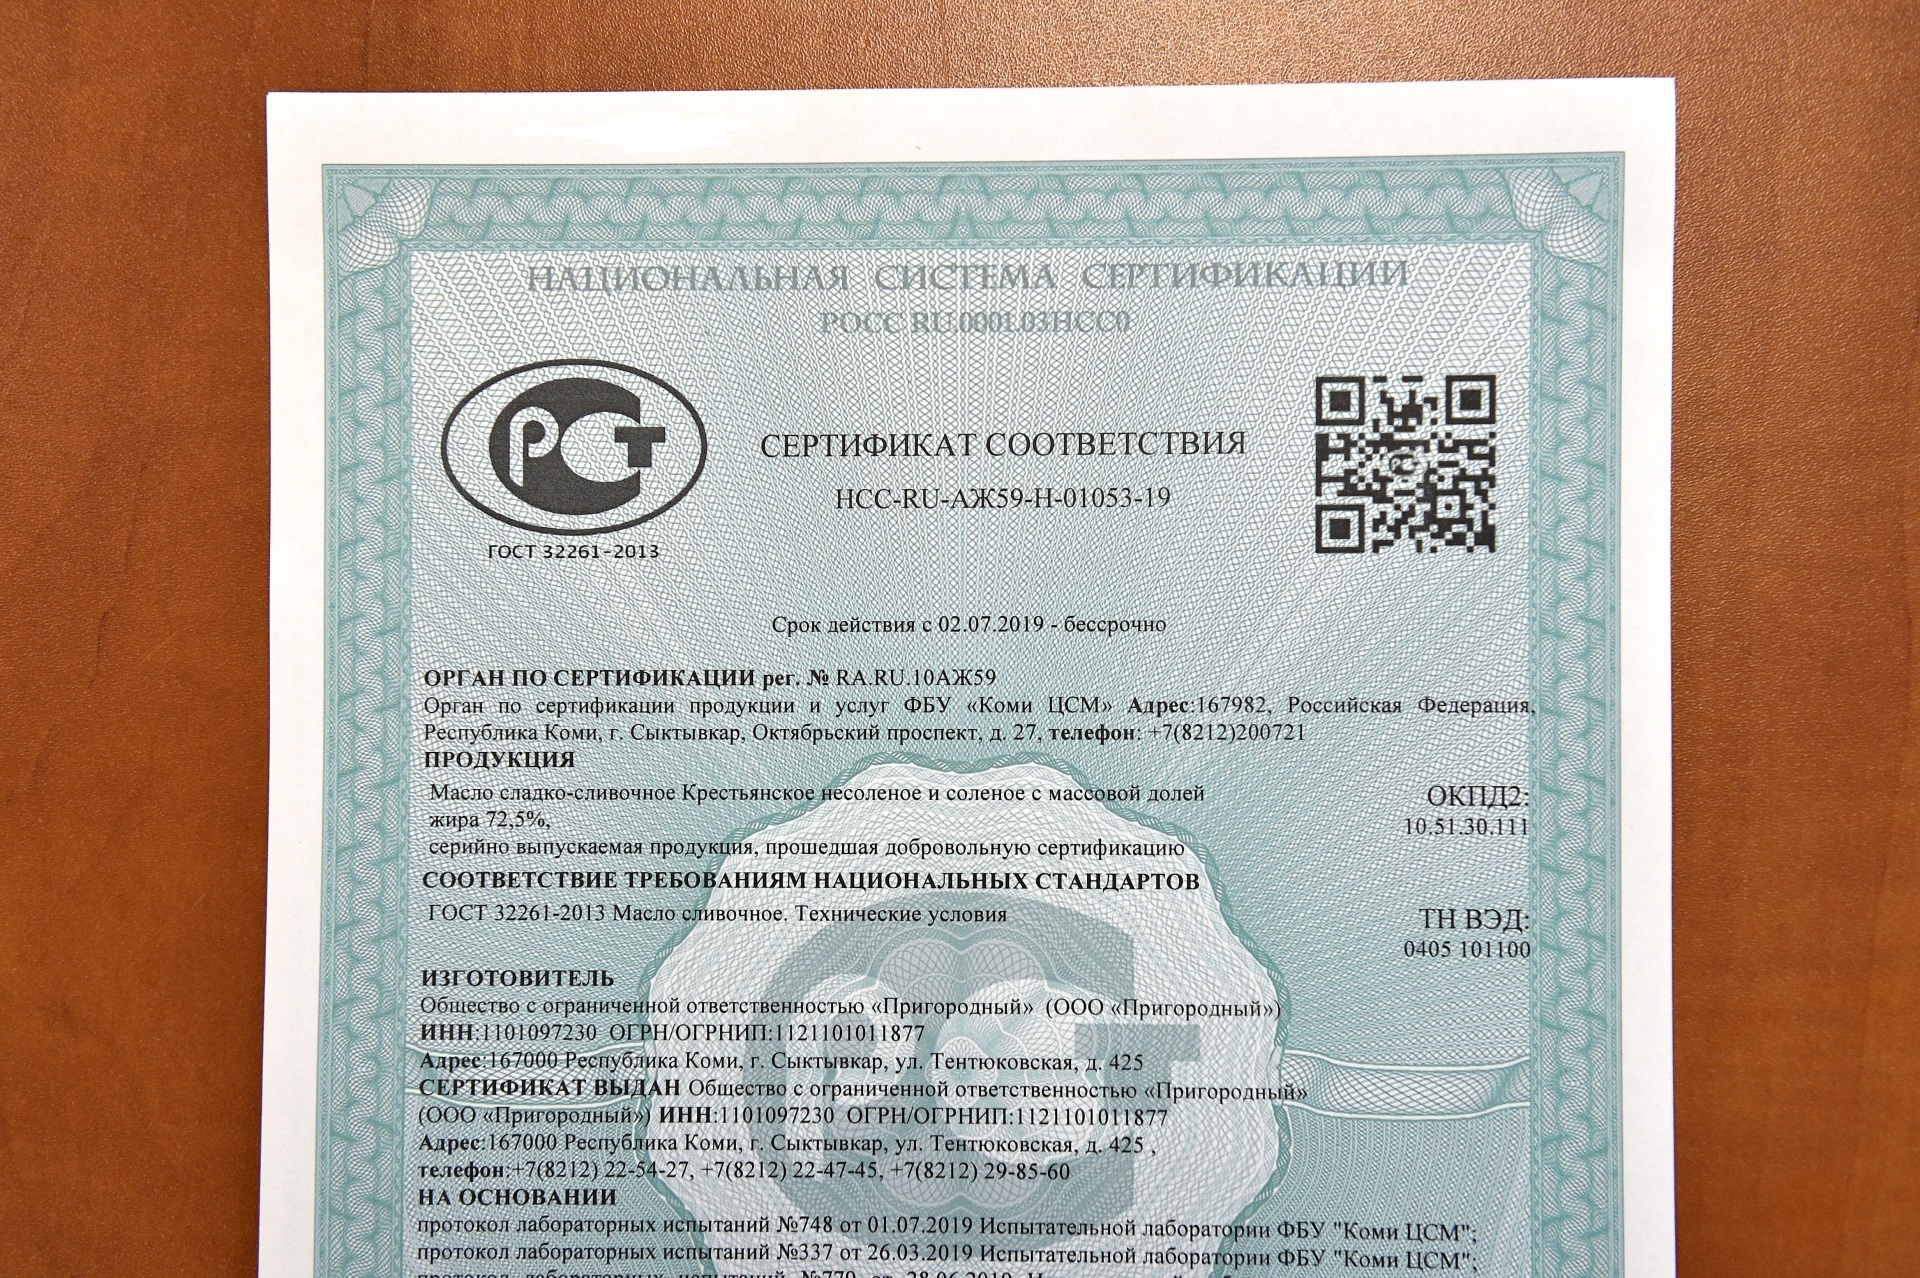 Русском сертификация